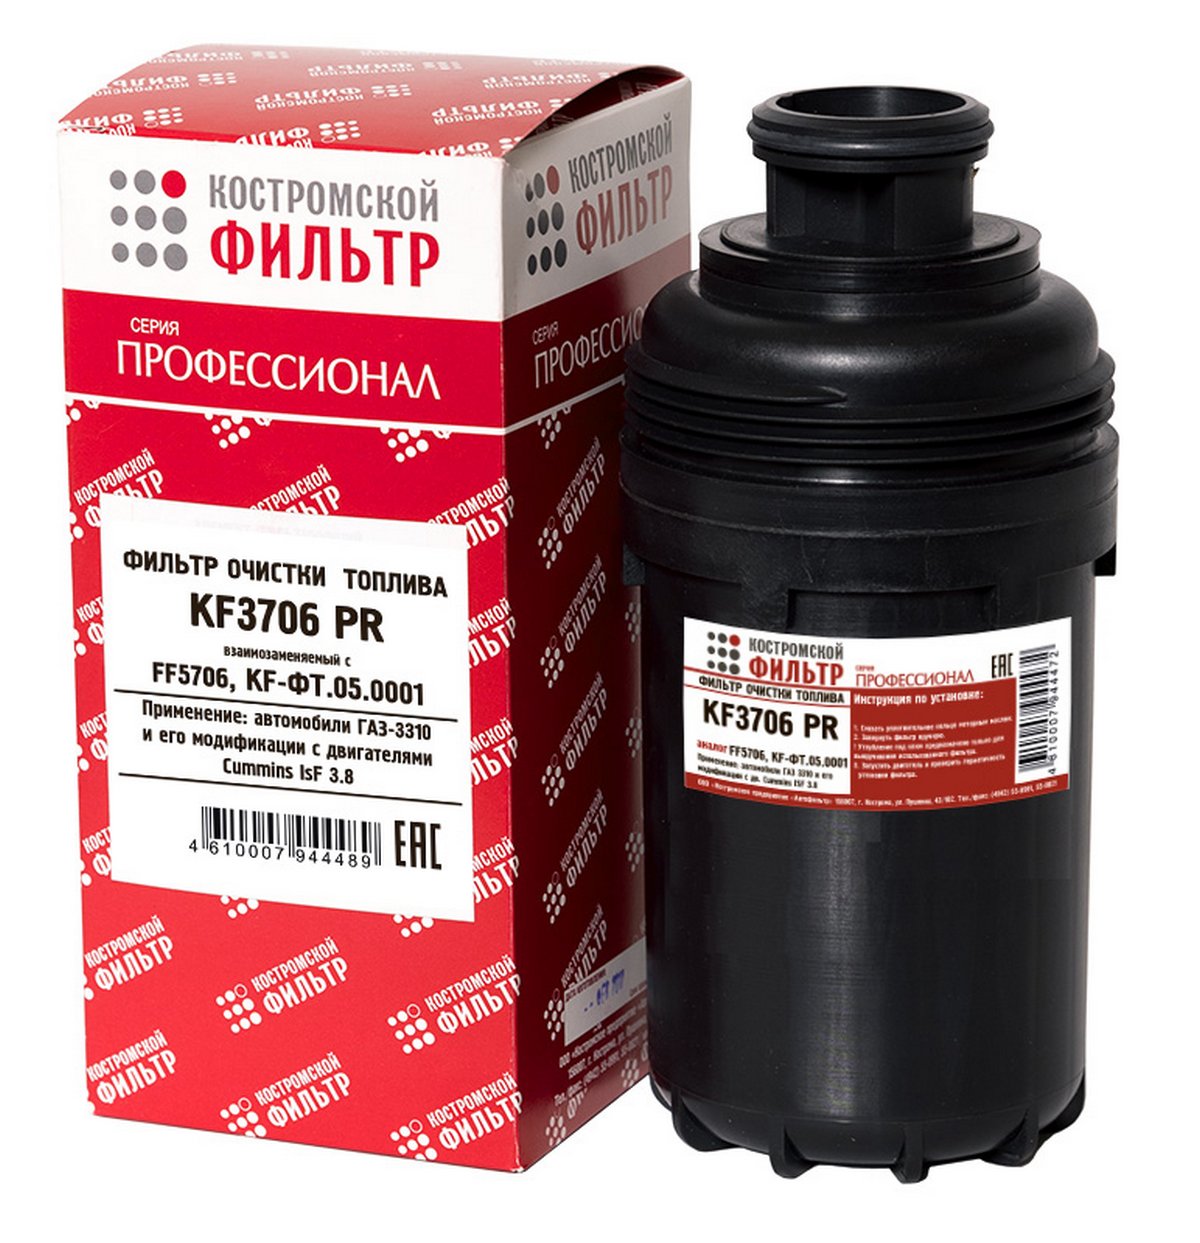 KF3706 PR Фильтр очистки топлива KF3706 PR Профессионал  Костромской фильтр